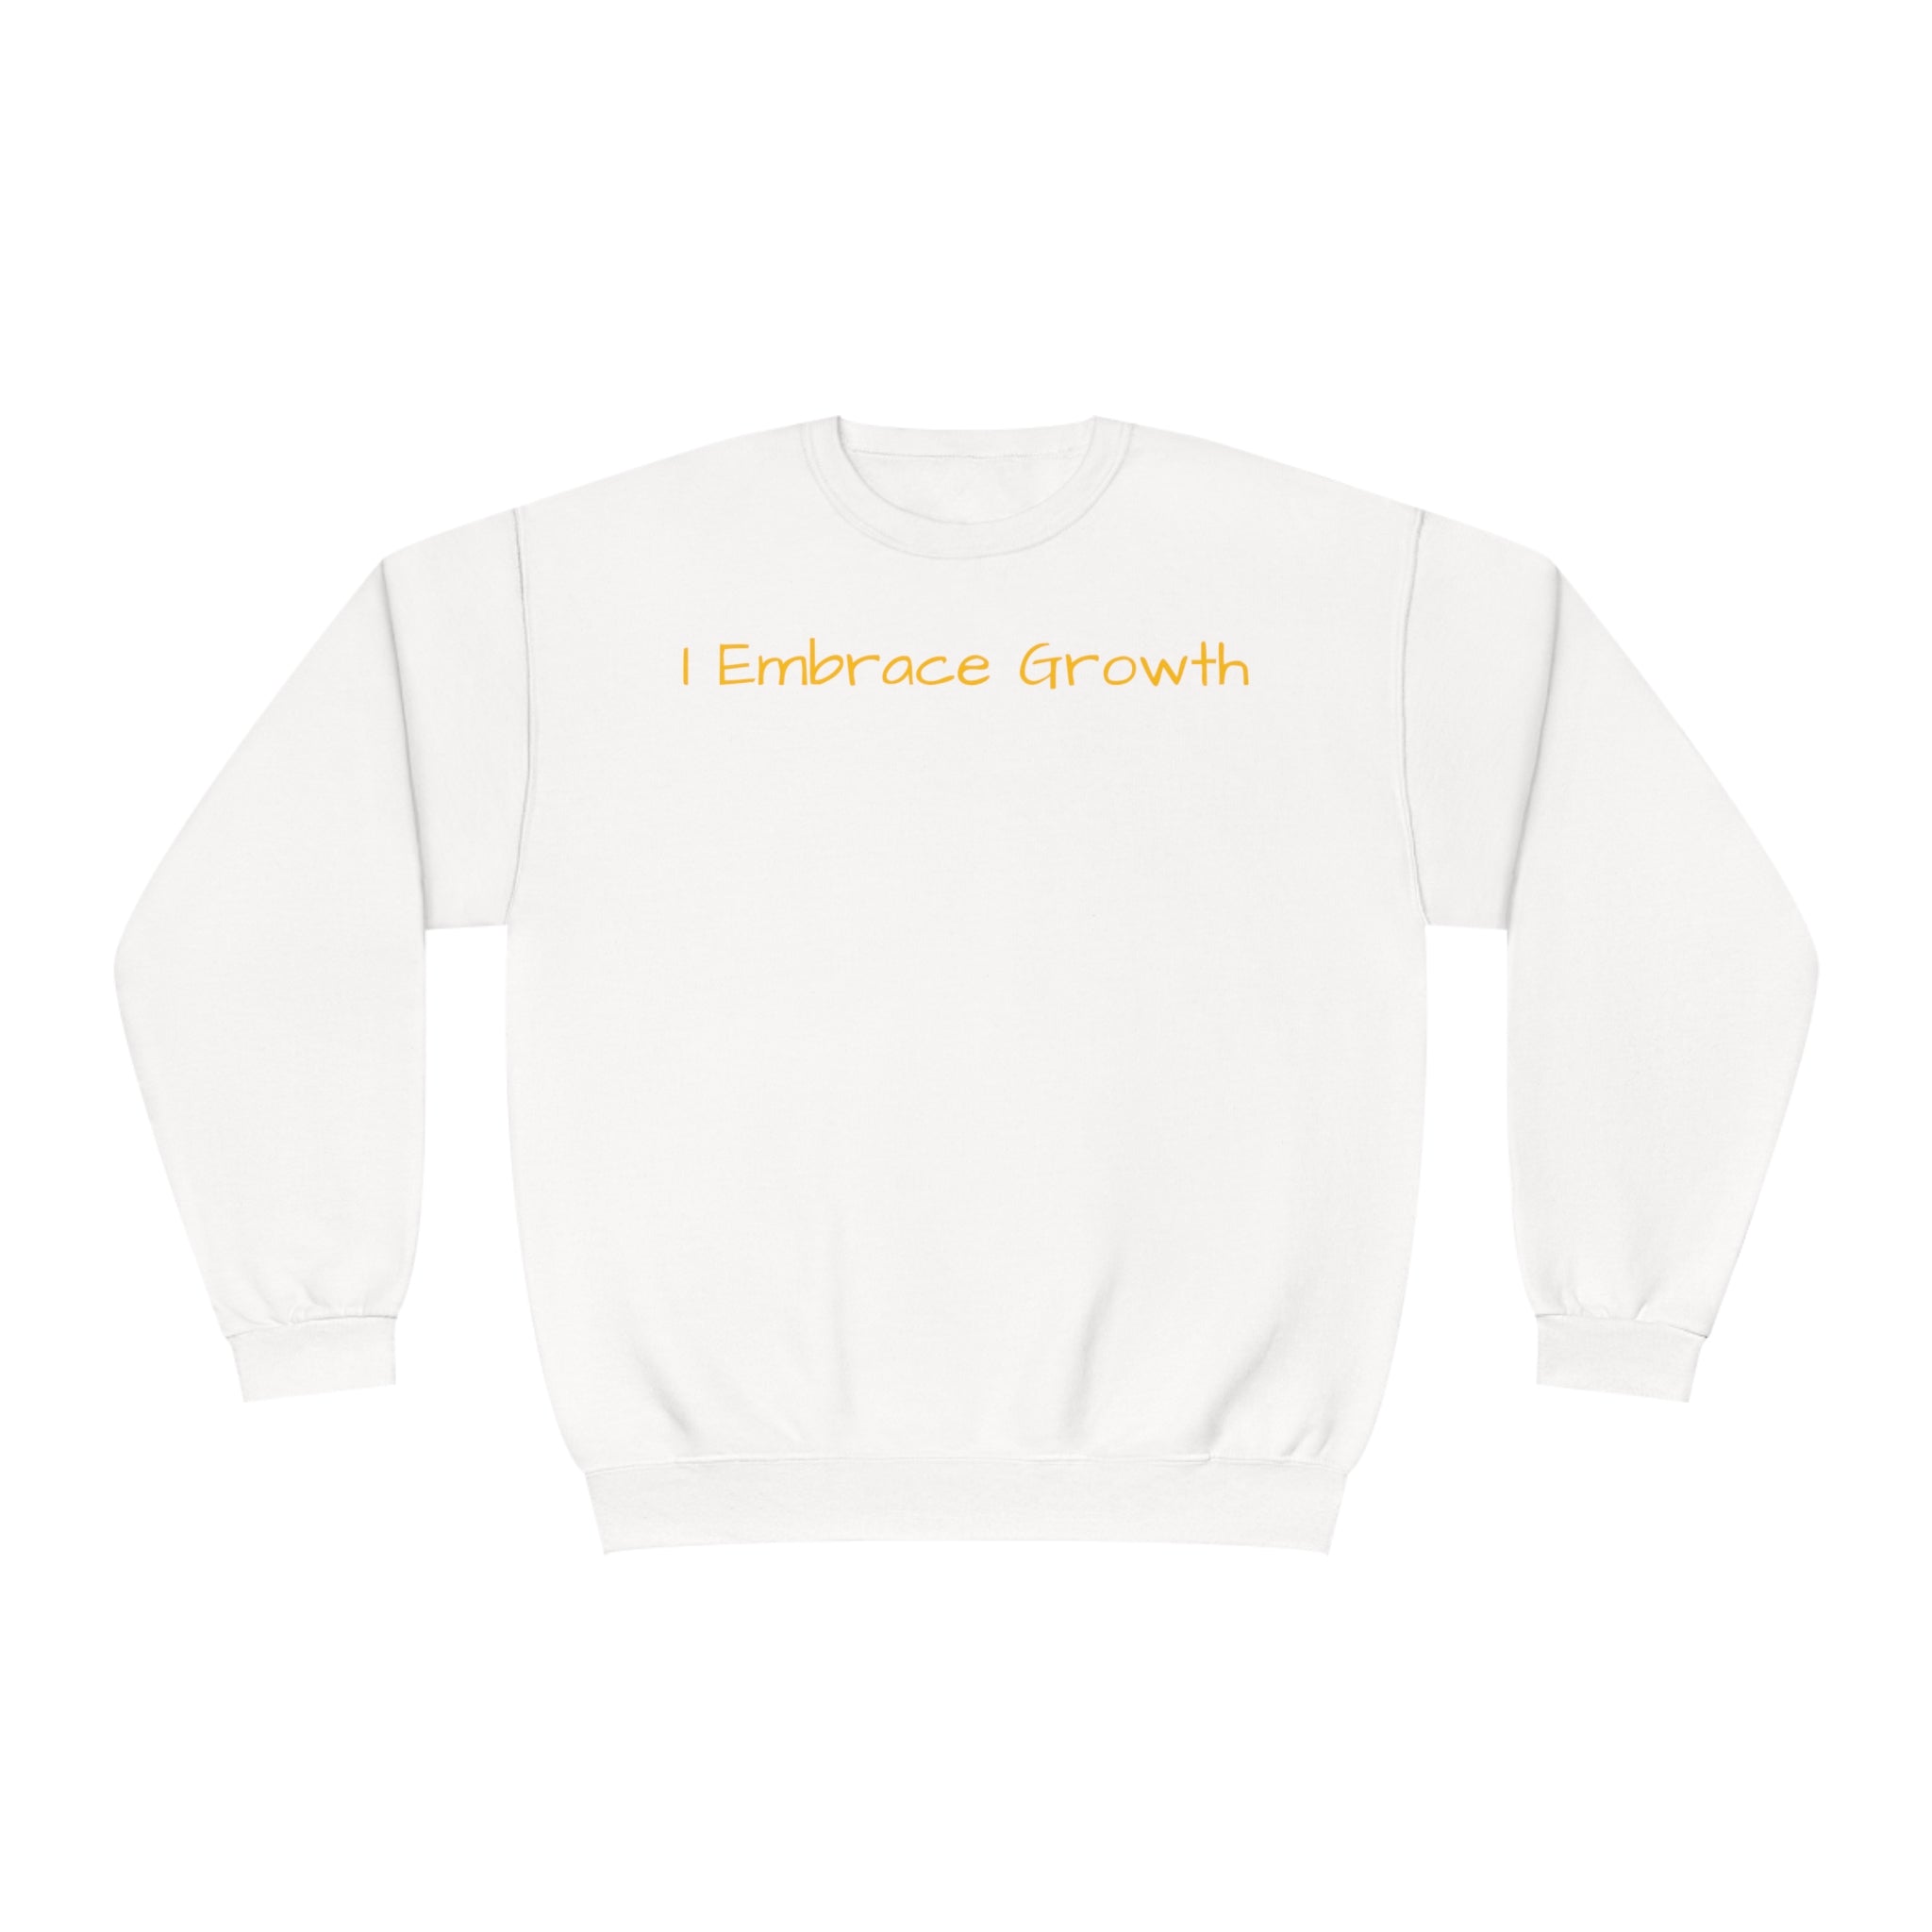 I Embrace Growth Fleece Sweatshirt: Comfort & Style Sandstone Comfy Sweater Cozy Sweatshirt Crewneck Sweatshirt Fleece Pullover Graphic Sweatshirt Men's Sweatshirt Streatwear Sweatshirt Warm Outerwear Women's Sweatshirt Sweatshirt 6793802662470794207_2048 Printify